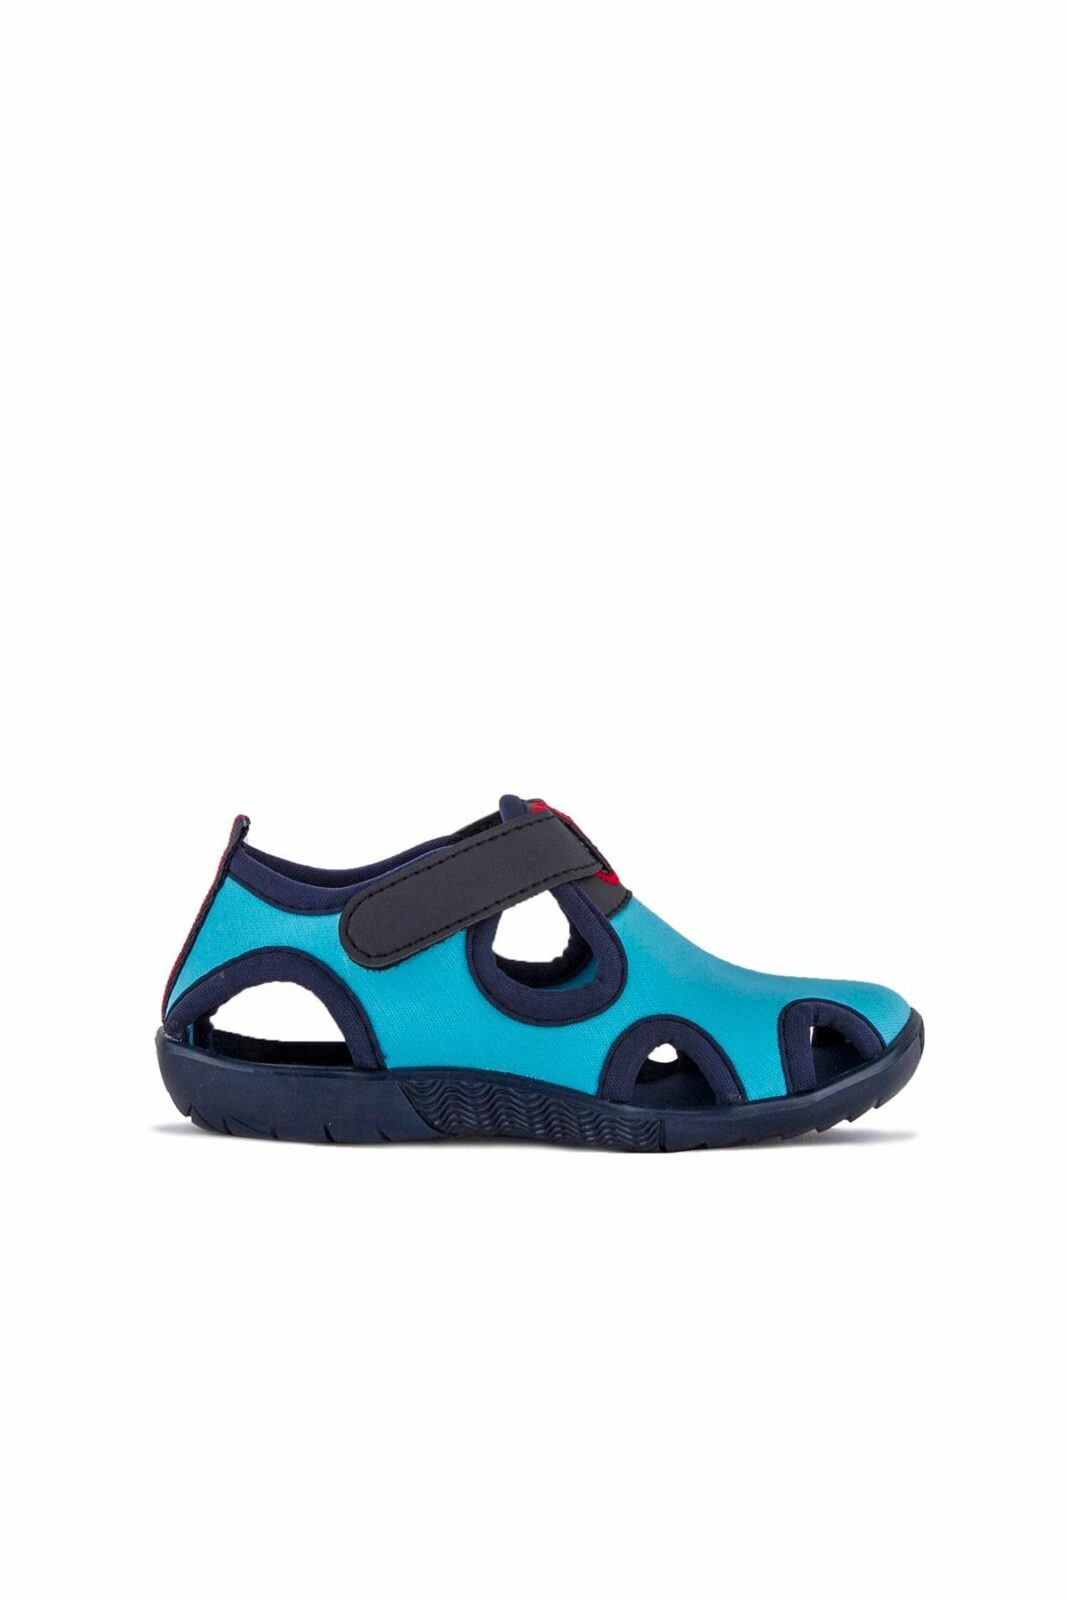 Slazenger Sandals - Turquoise